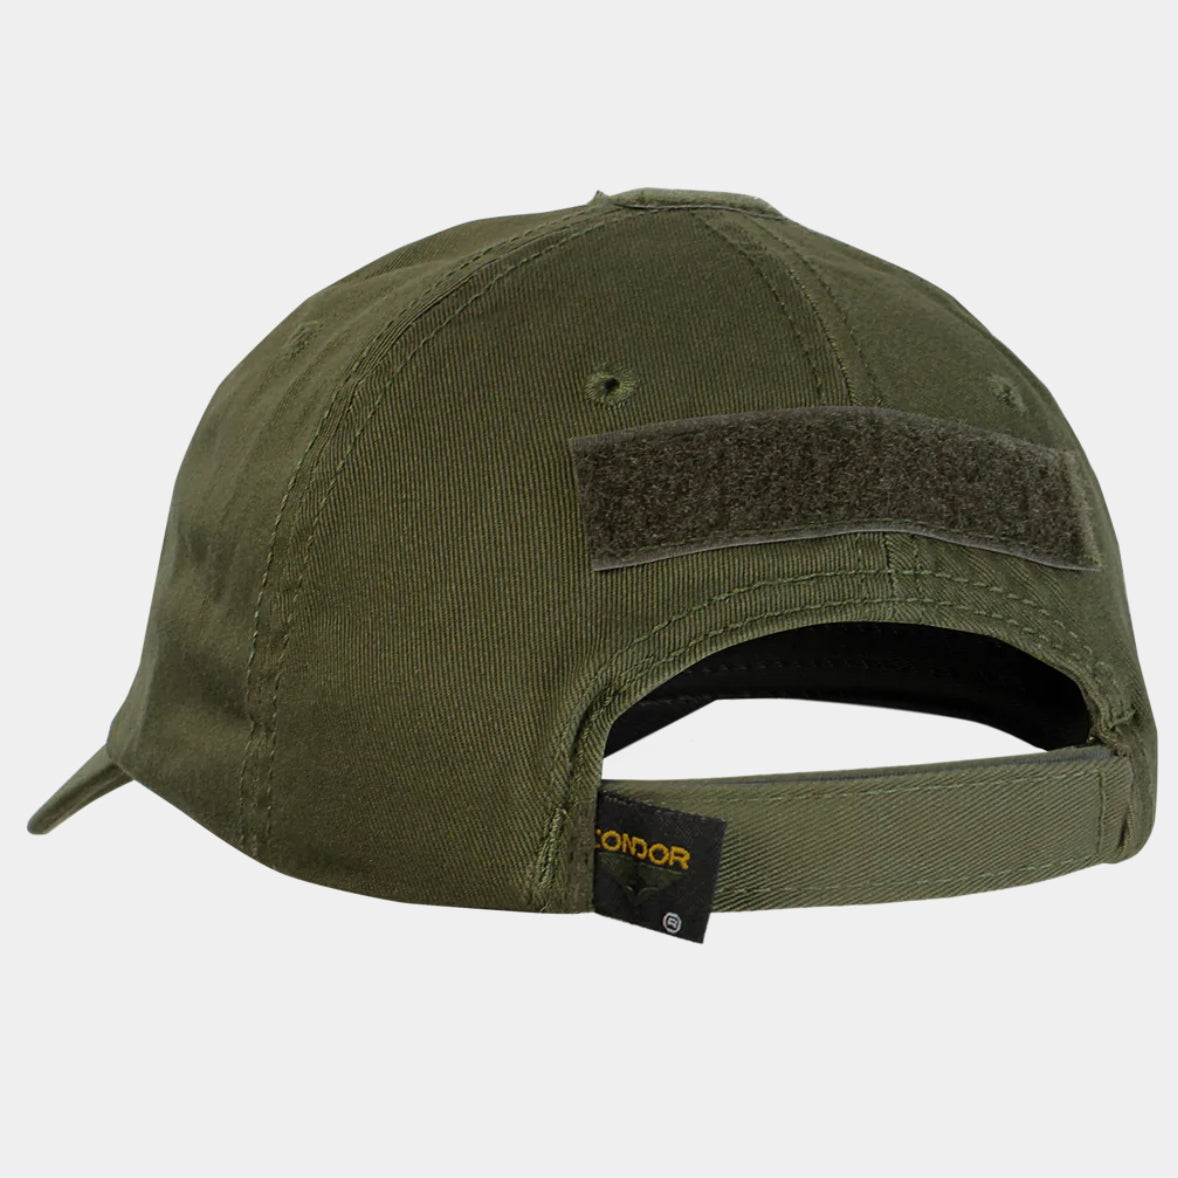 Olive Drab Tactical Cap